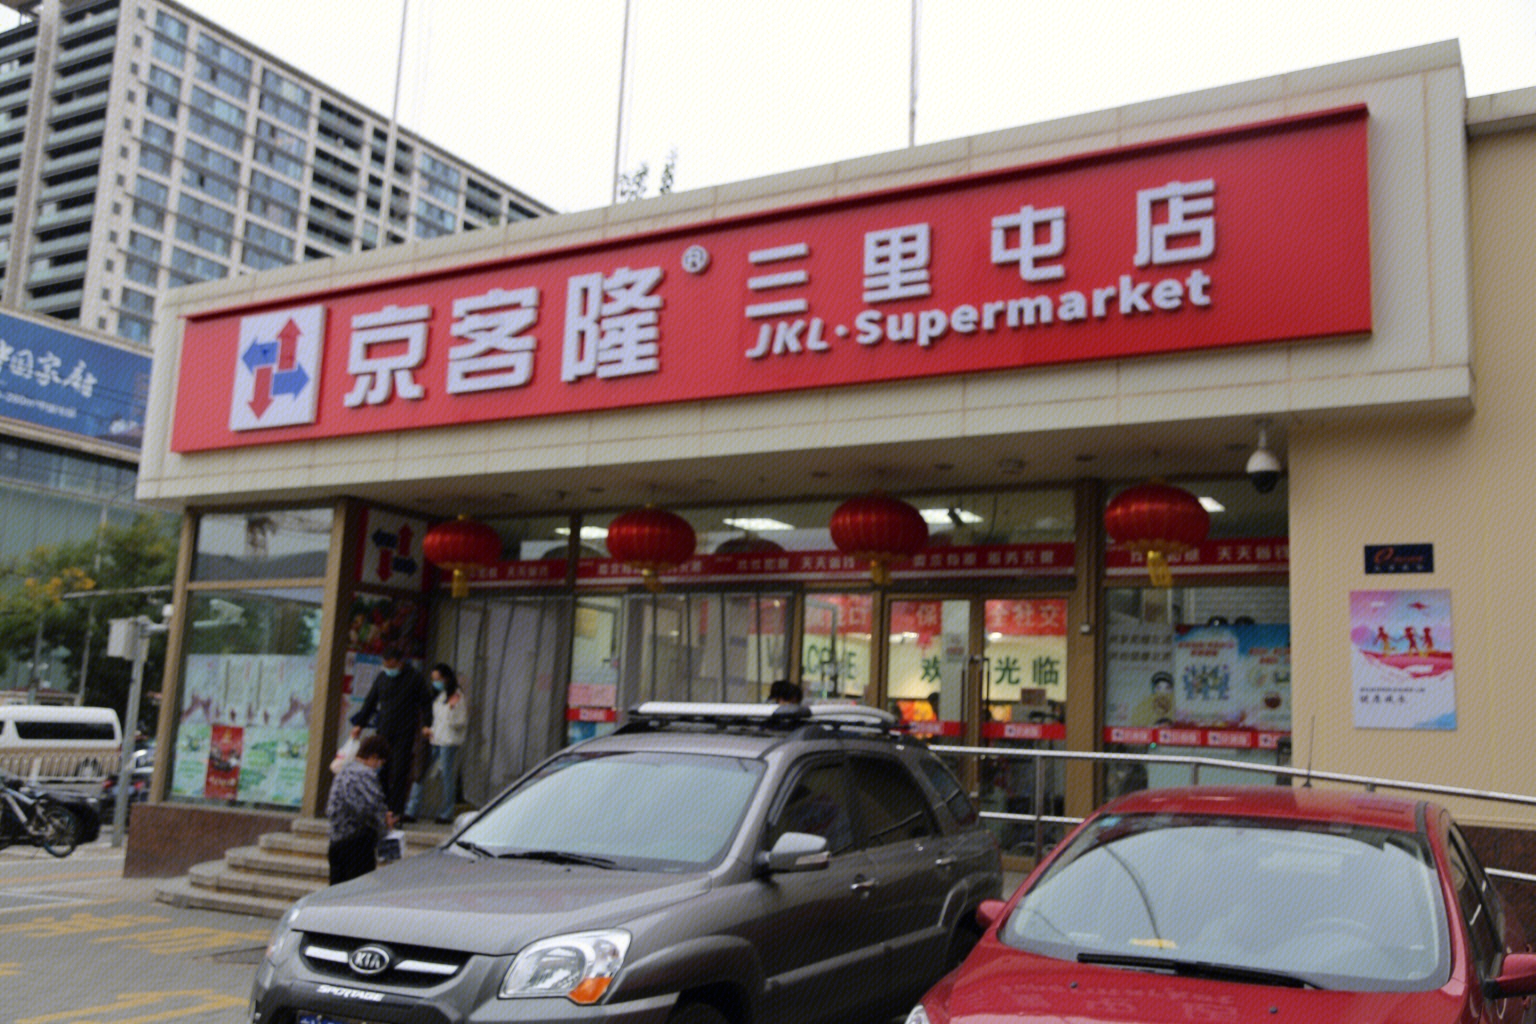 京客隆超市京客隆超市：营业时间、特色商品和服务 京客隆超市营业时间图2